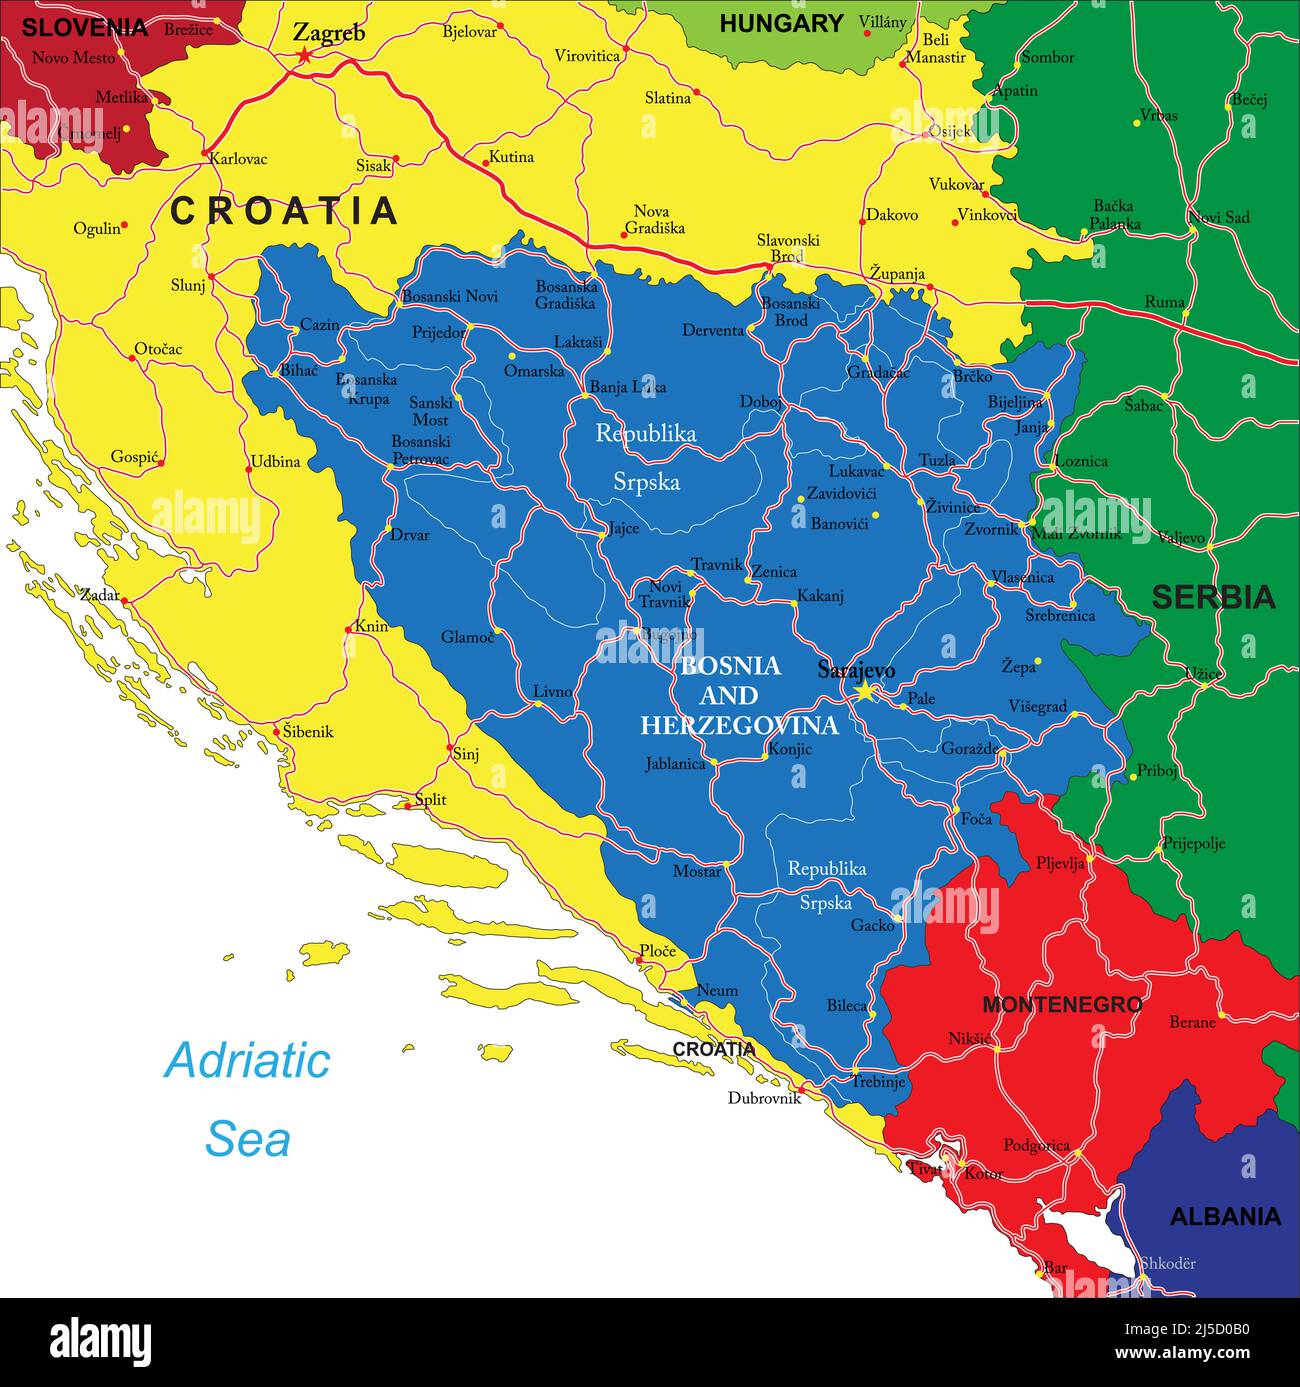 Mappa vettoriale molto dettagliata della Bosnia-Erzegovina con regioni amministrative, principali città e strade. Illustrazione Vettoriale